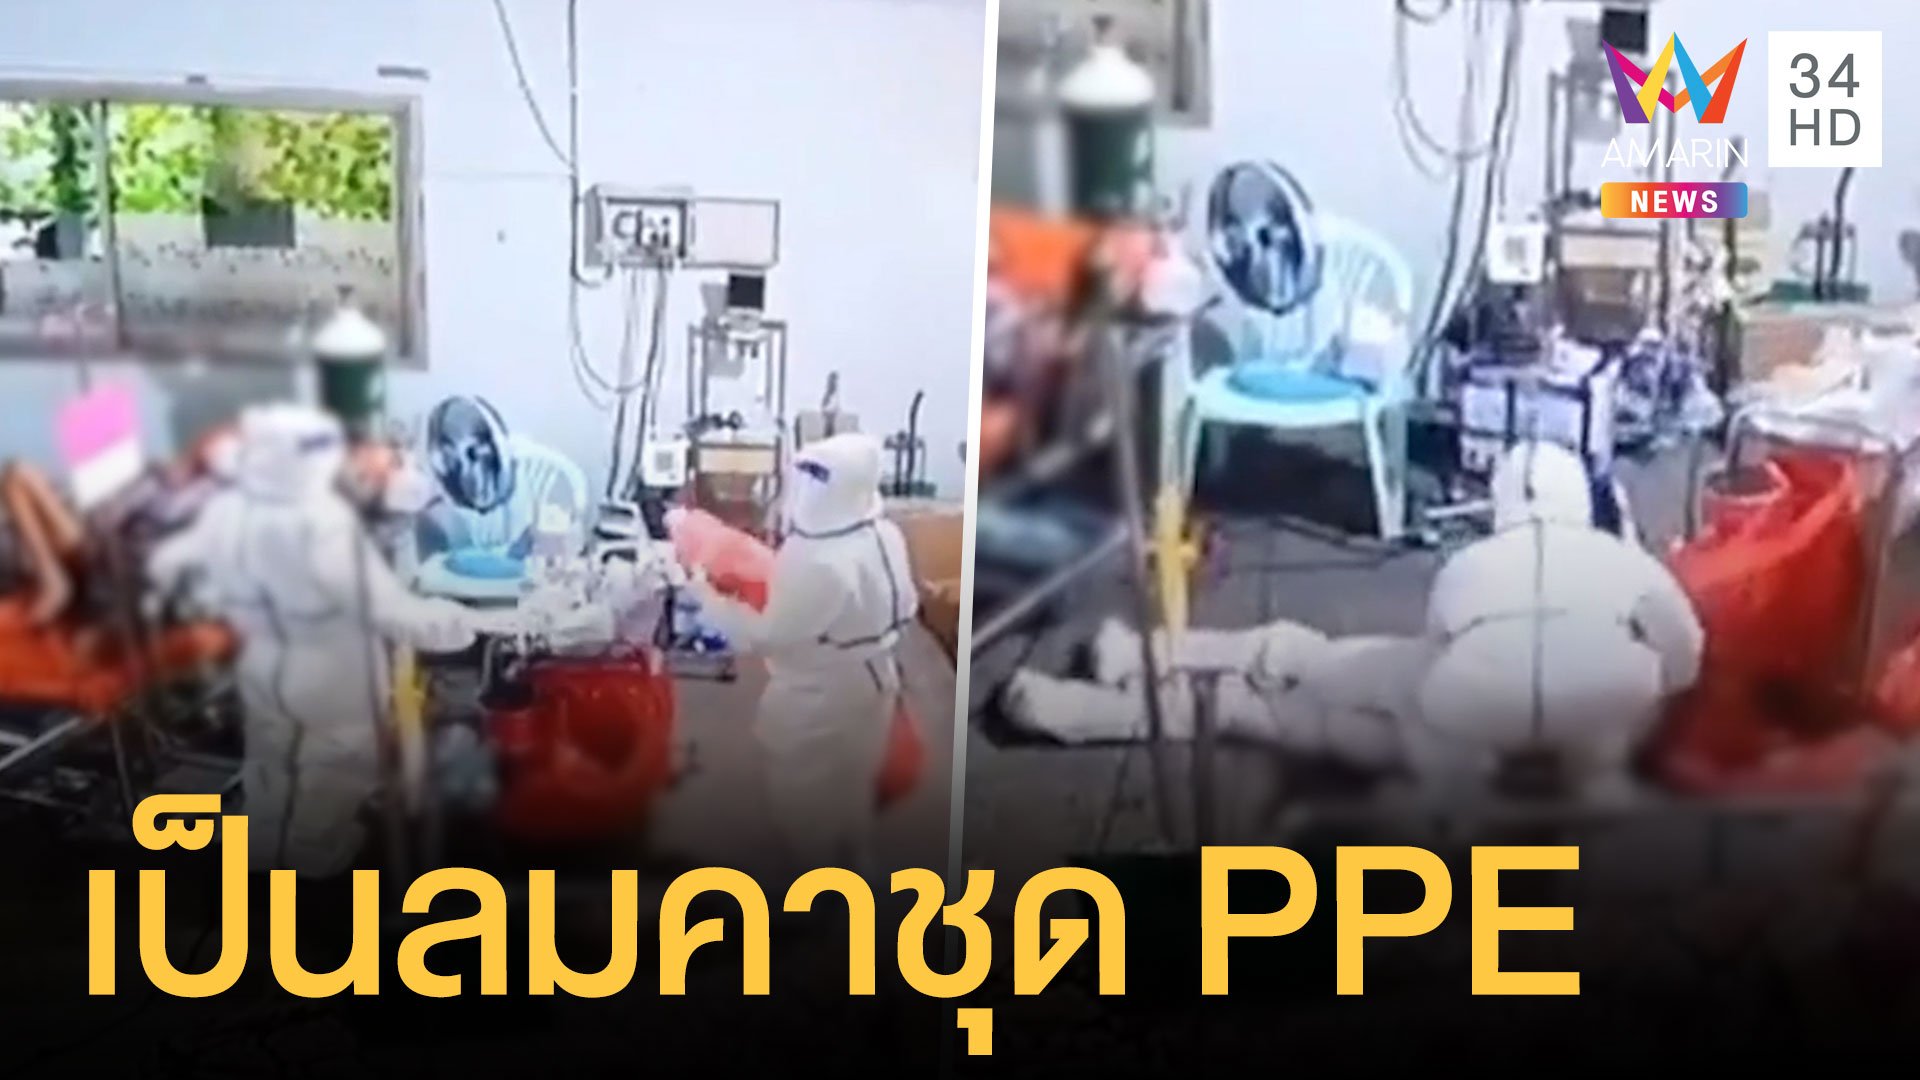 พยาบาลเป็นลมคาชุด PPE ขณะดูแลผู้ป่วยโควิด | ข่าวอรุณอมรินทร์ | 1 ส.ค. 64 | AMARIN TVHD34